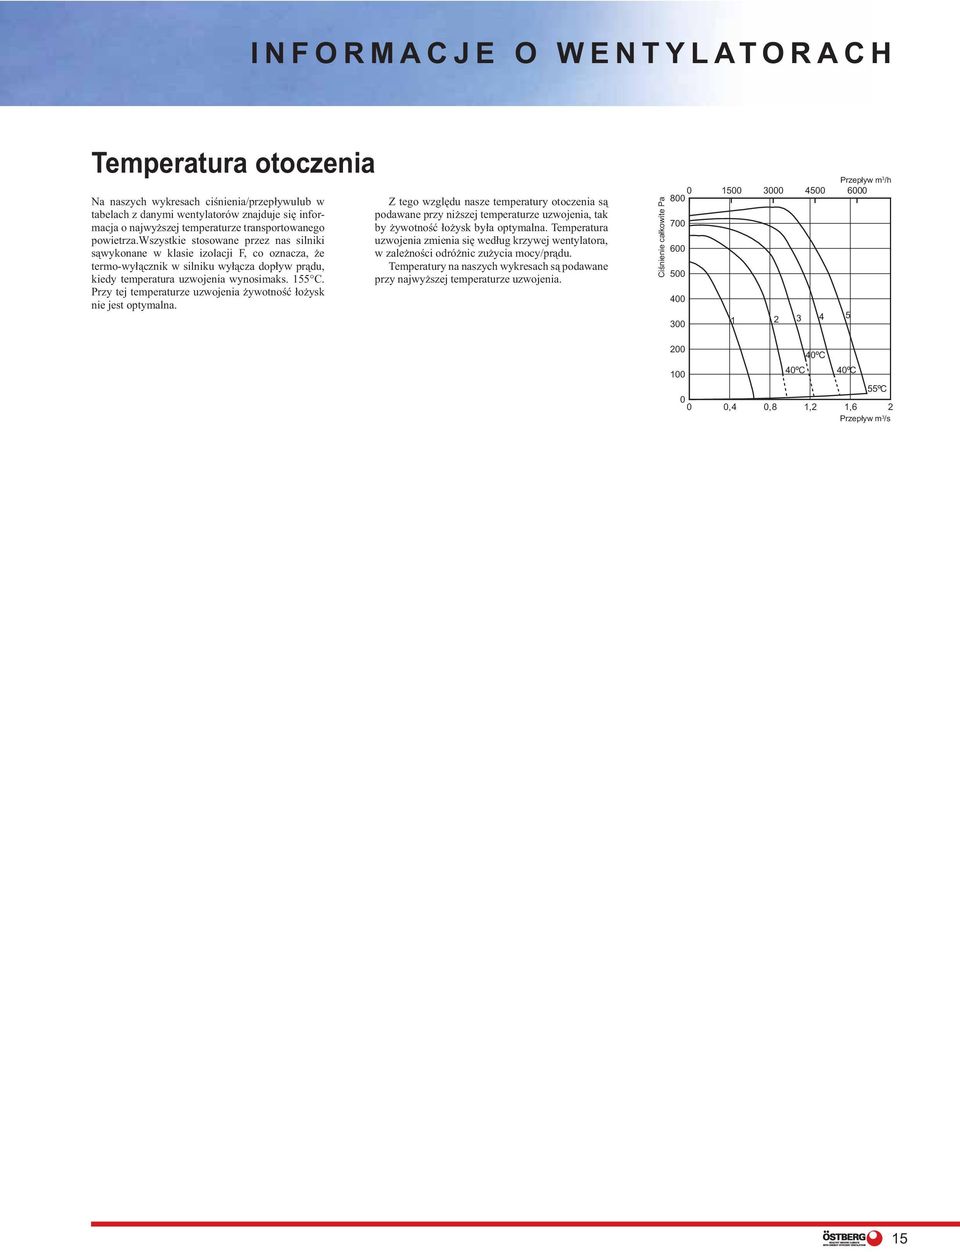 Przy tej temperaturze uzwojenia żywotność łożysk nie jest optymalna. Z tego względu nasze temperatury otoczenia są podawane przy niższej temperaturze uzwojenia, tak by żywotność łożysk była optymalna.